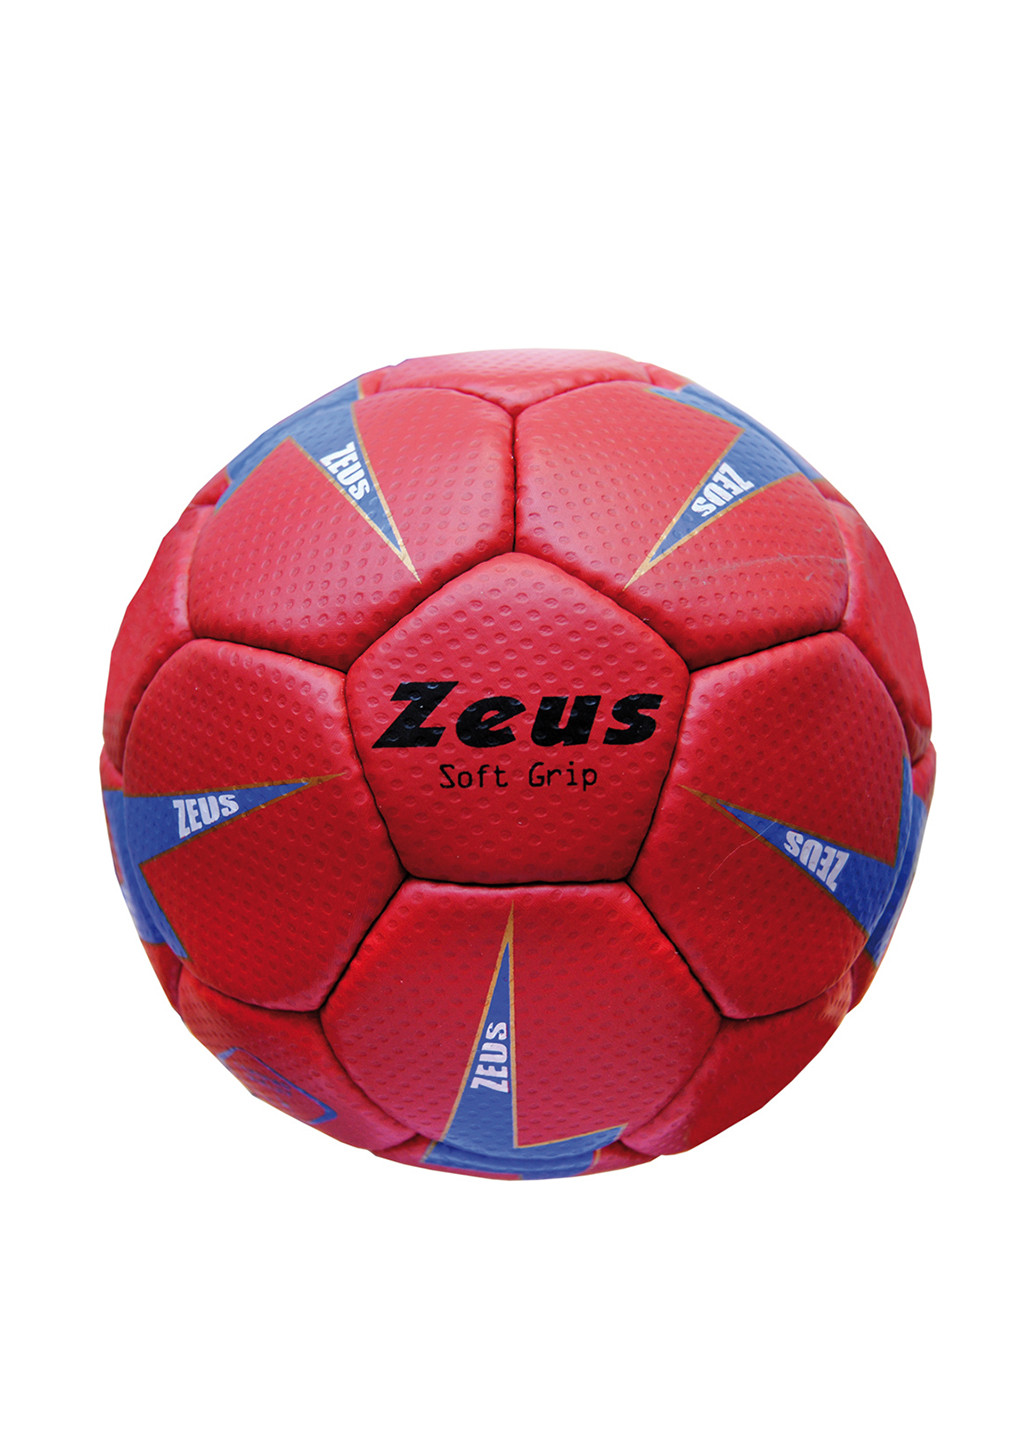 М'яч Zeus червоний